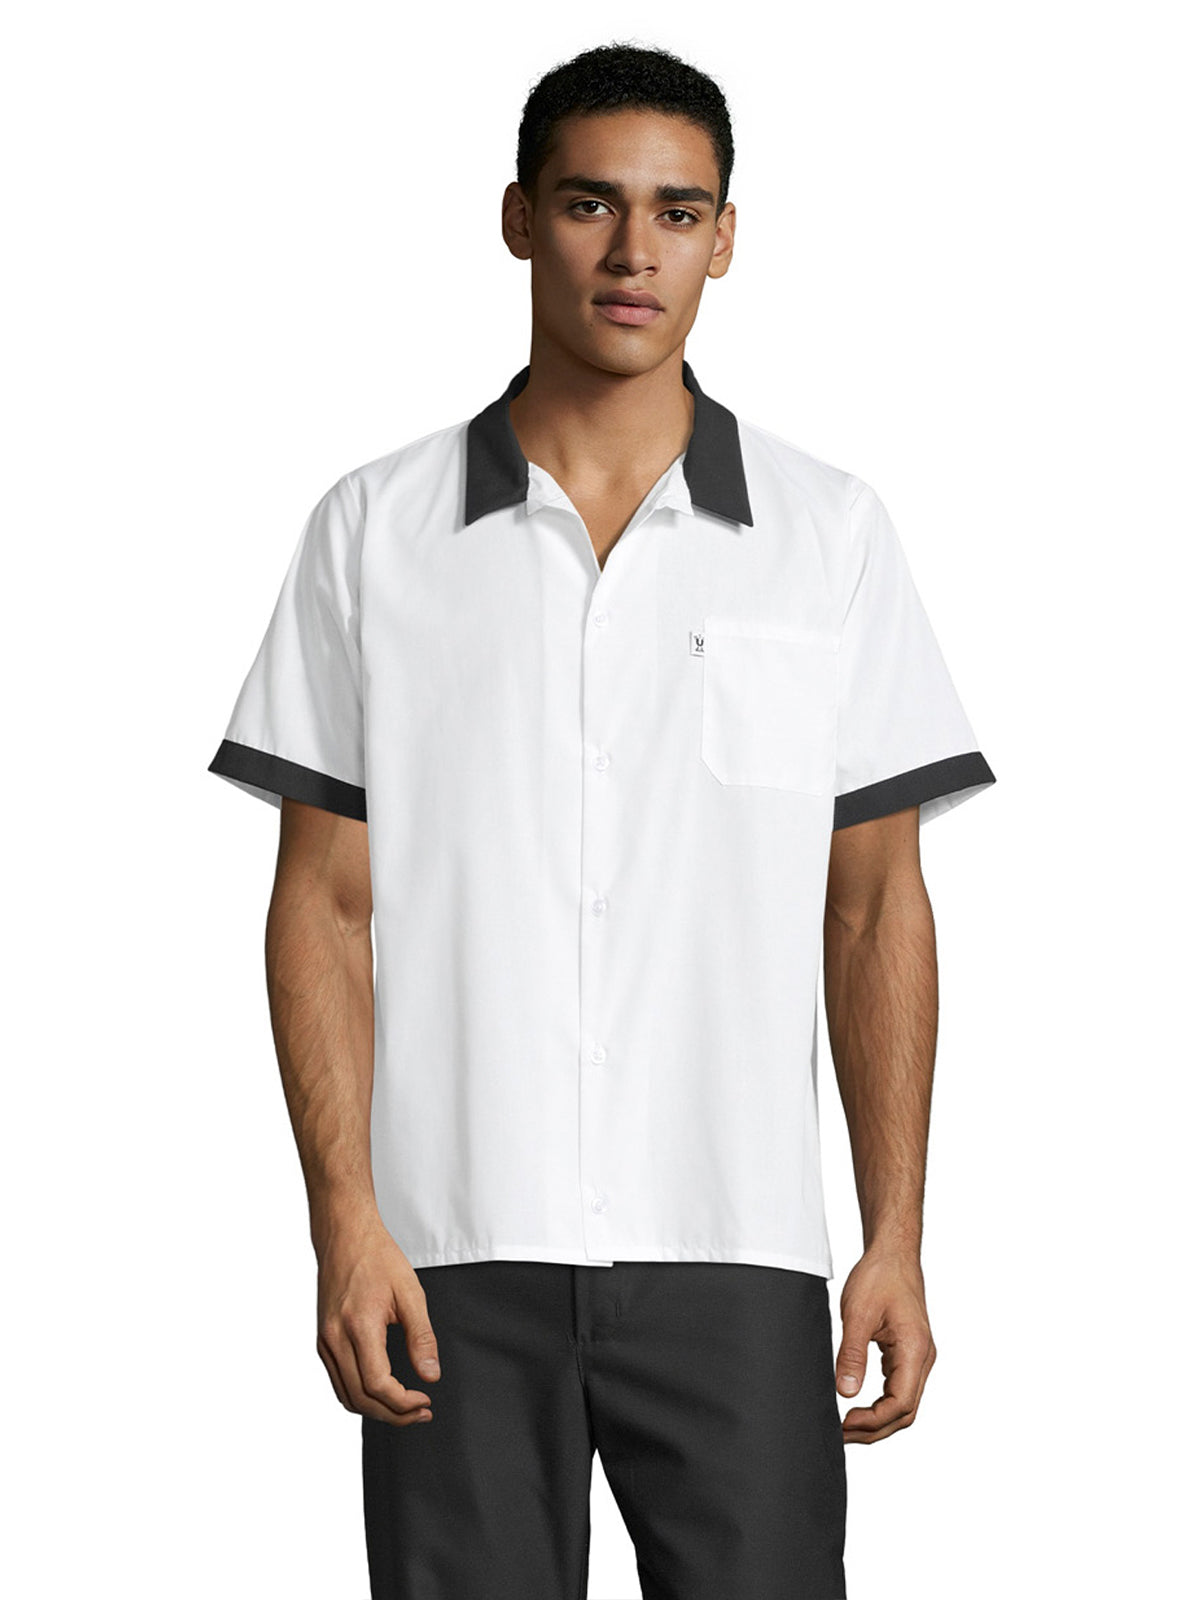 Unisex Six Button Shirt - 0955 - White/Black – Scrub Authority